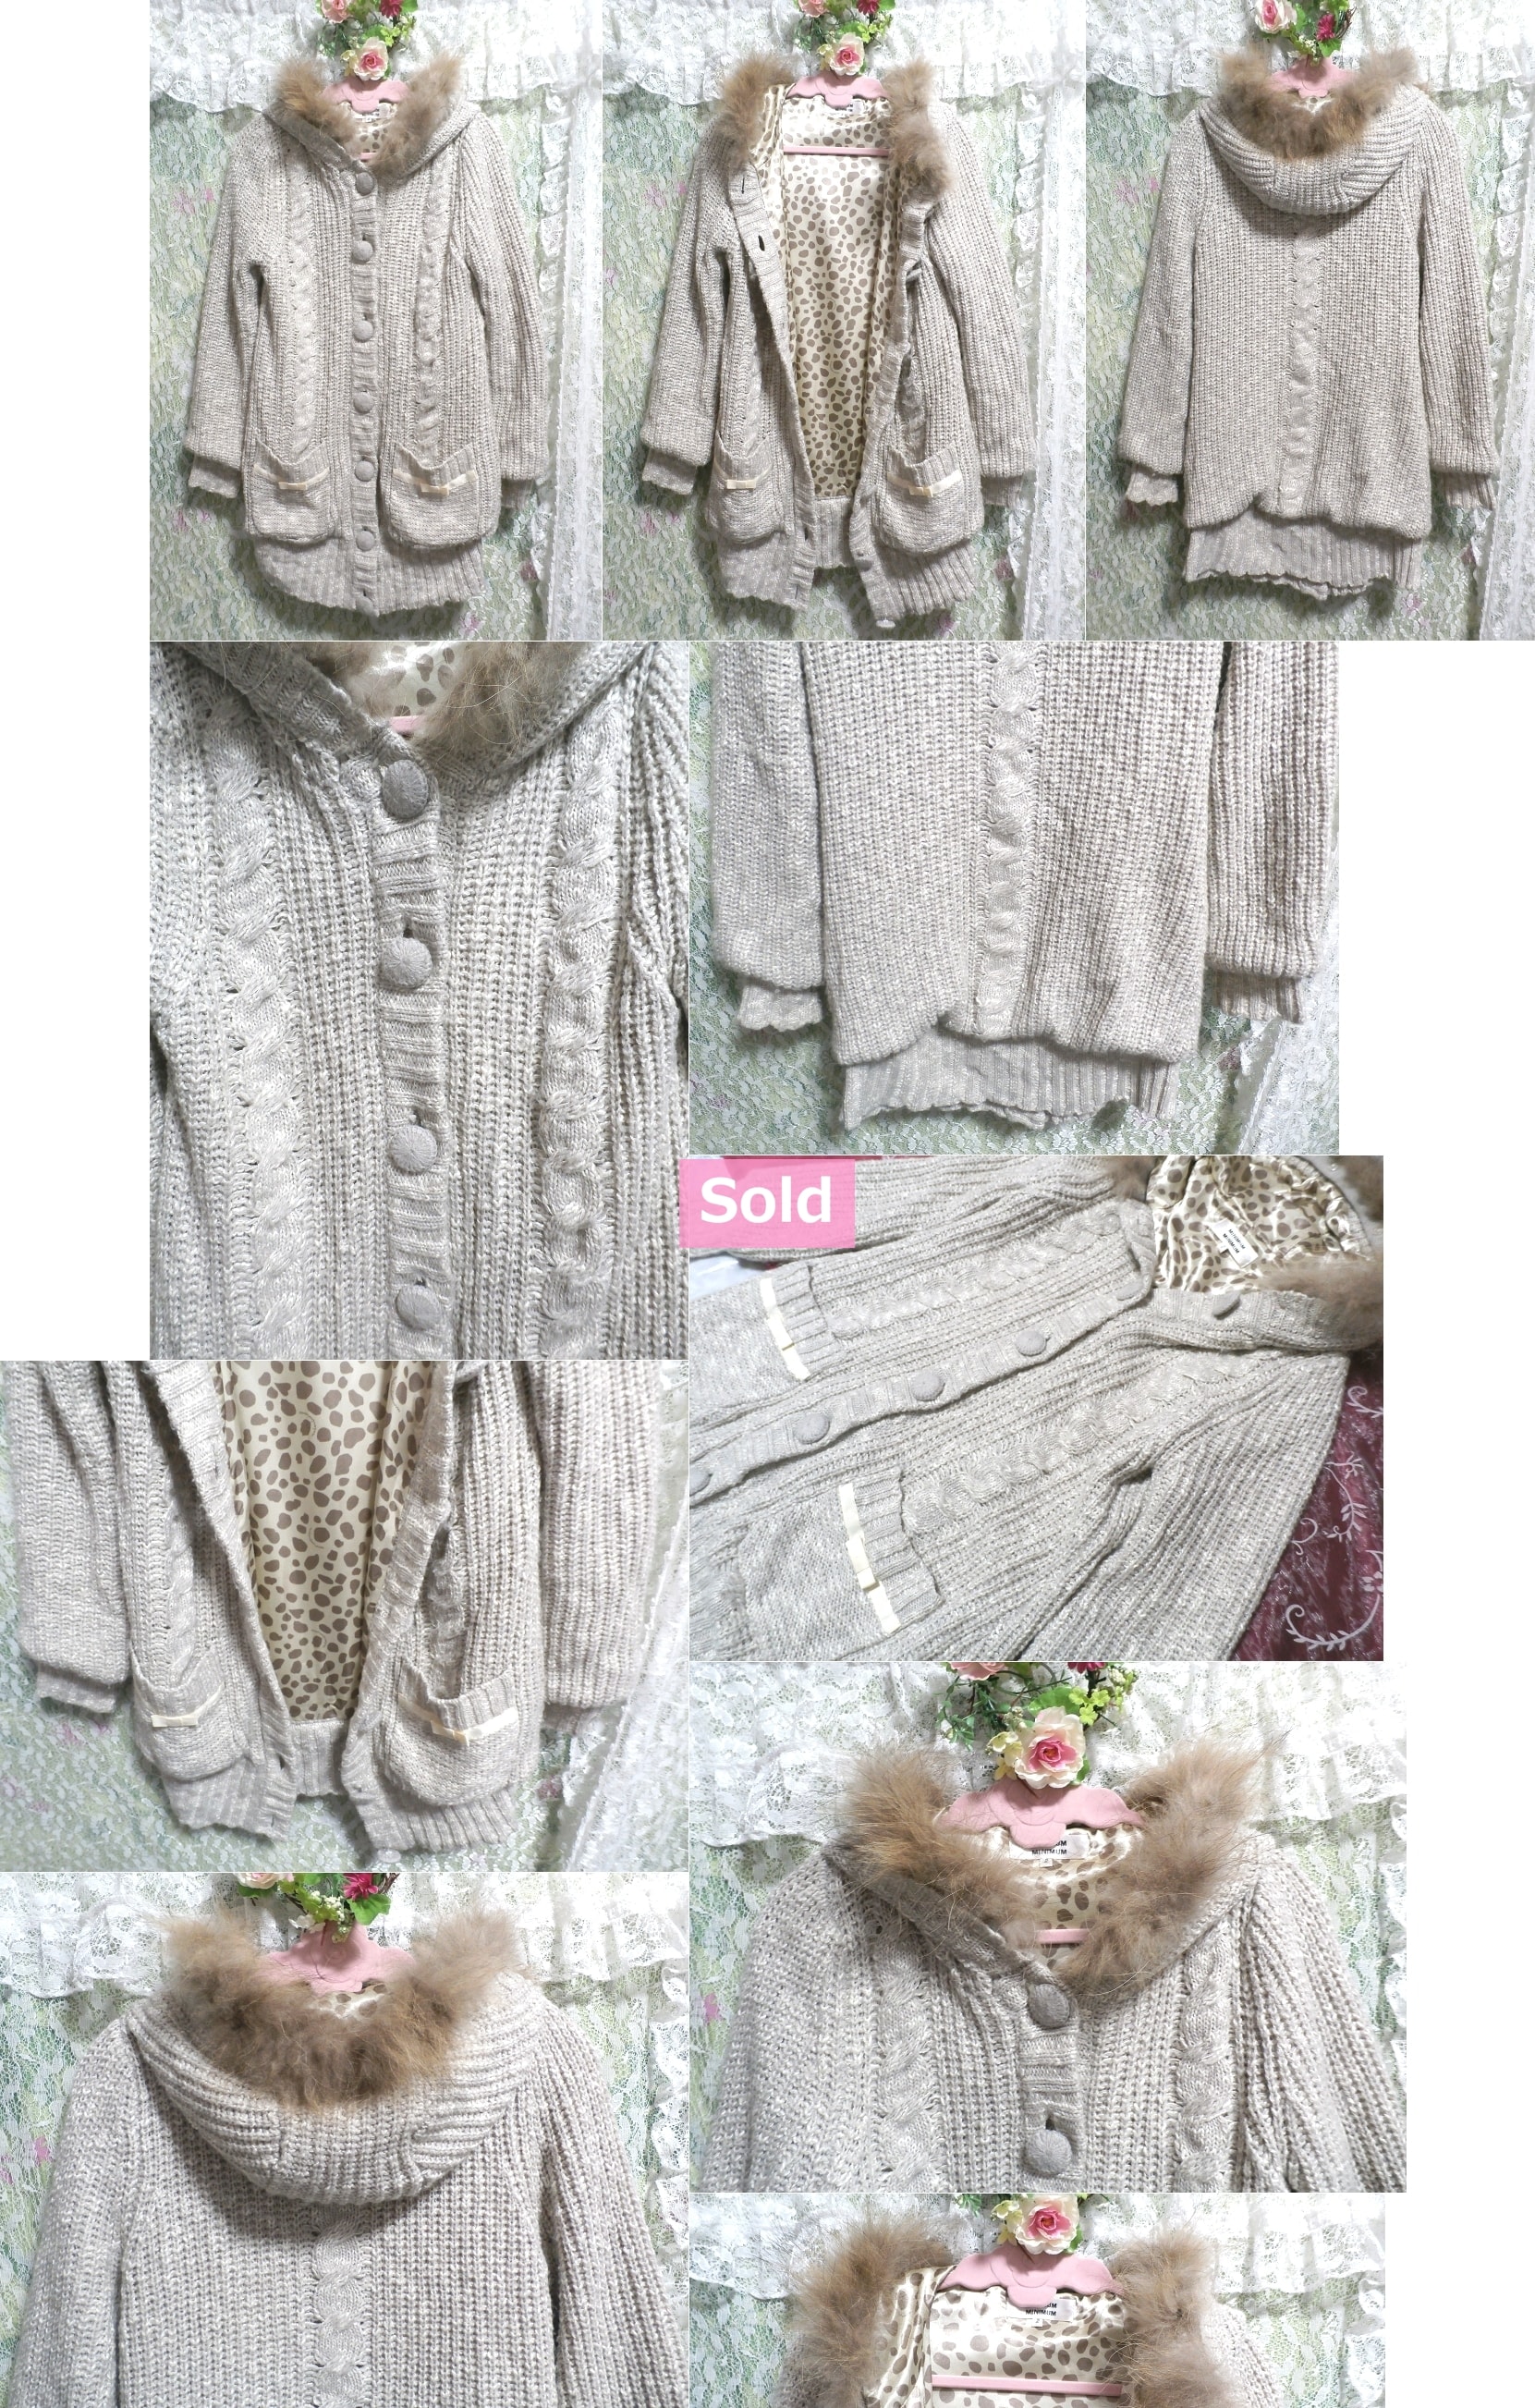 ふわふわラクーンファーフードグレーホワイト手編みセーターカーディガン/羽織 Fluffy racoon fur hood gray white knit sweater cardigan